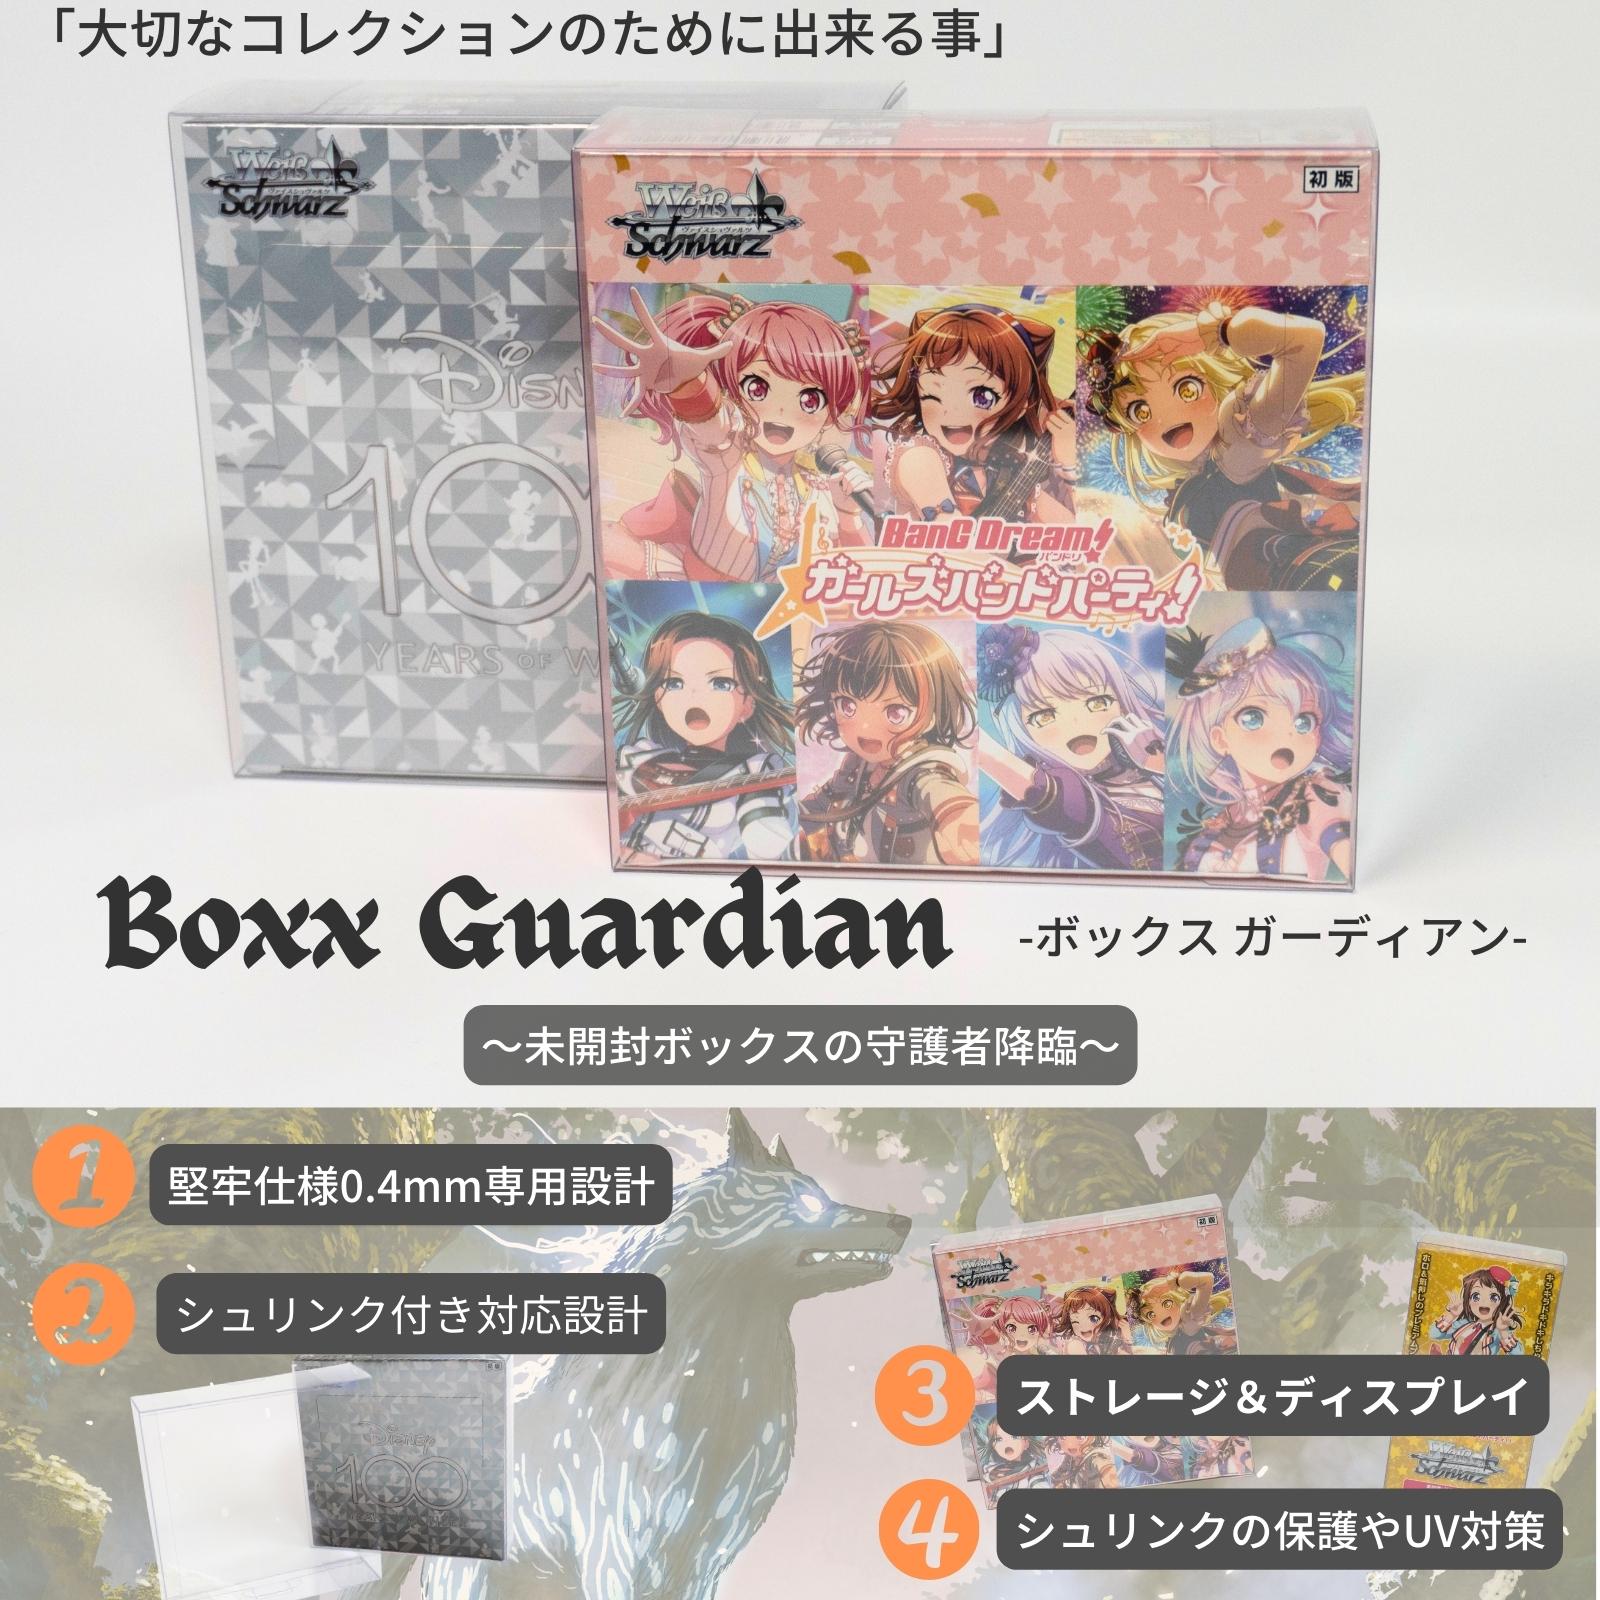 Boxx Guardian ヴァイスシュヴァルツBOX用 ブースターパックBOX サイズ